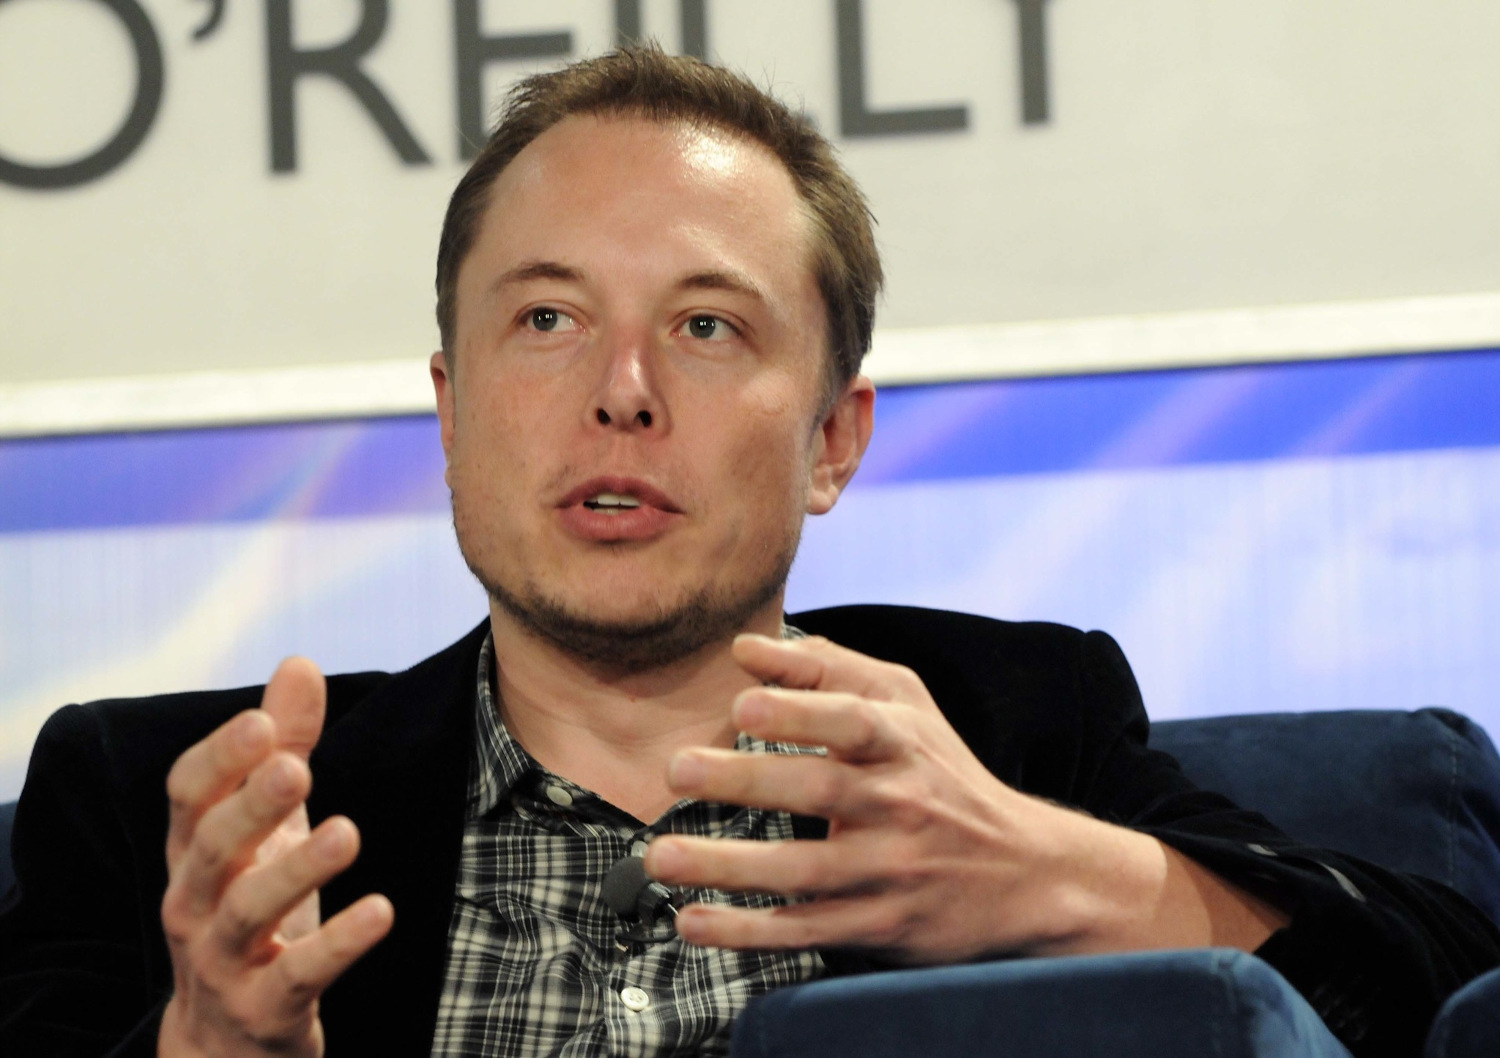 Elon Musk százmillió dollárt ajánlott fel díjként a légkörből a szén-dioxid kivonására képes technológiáért